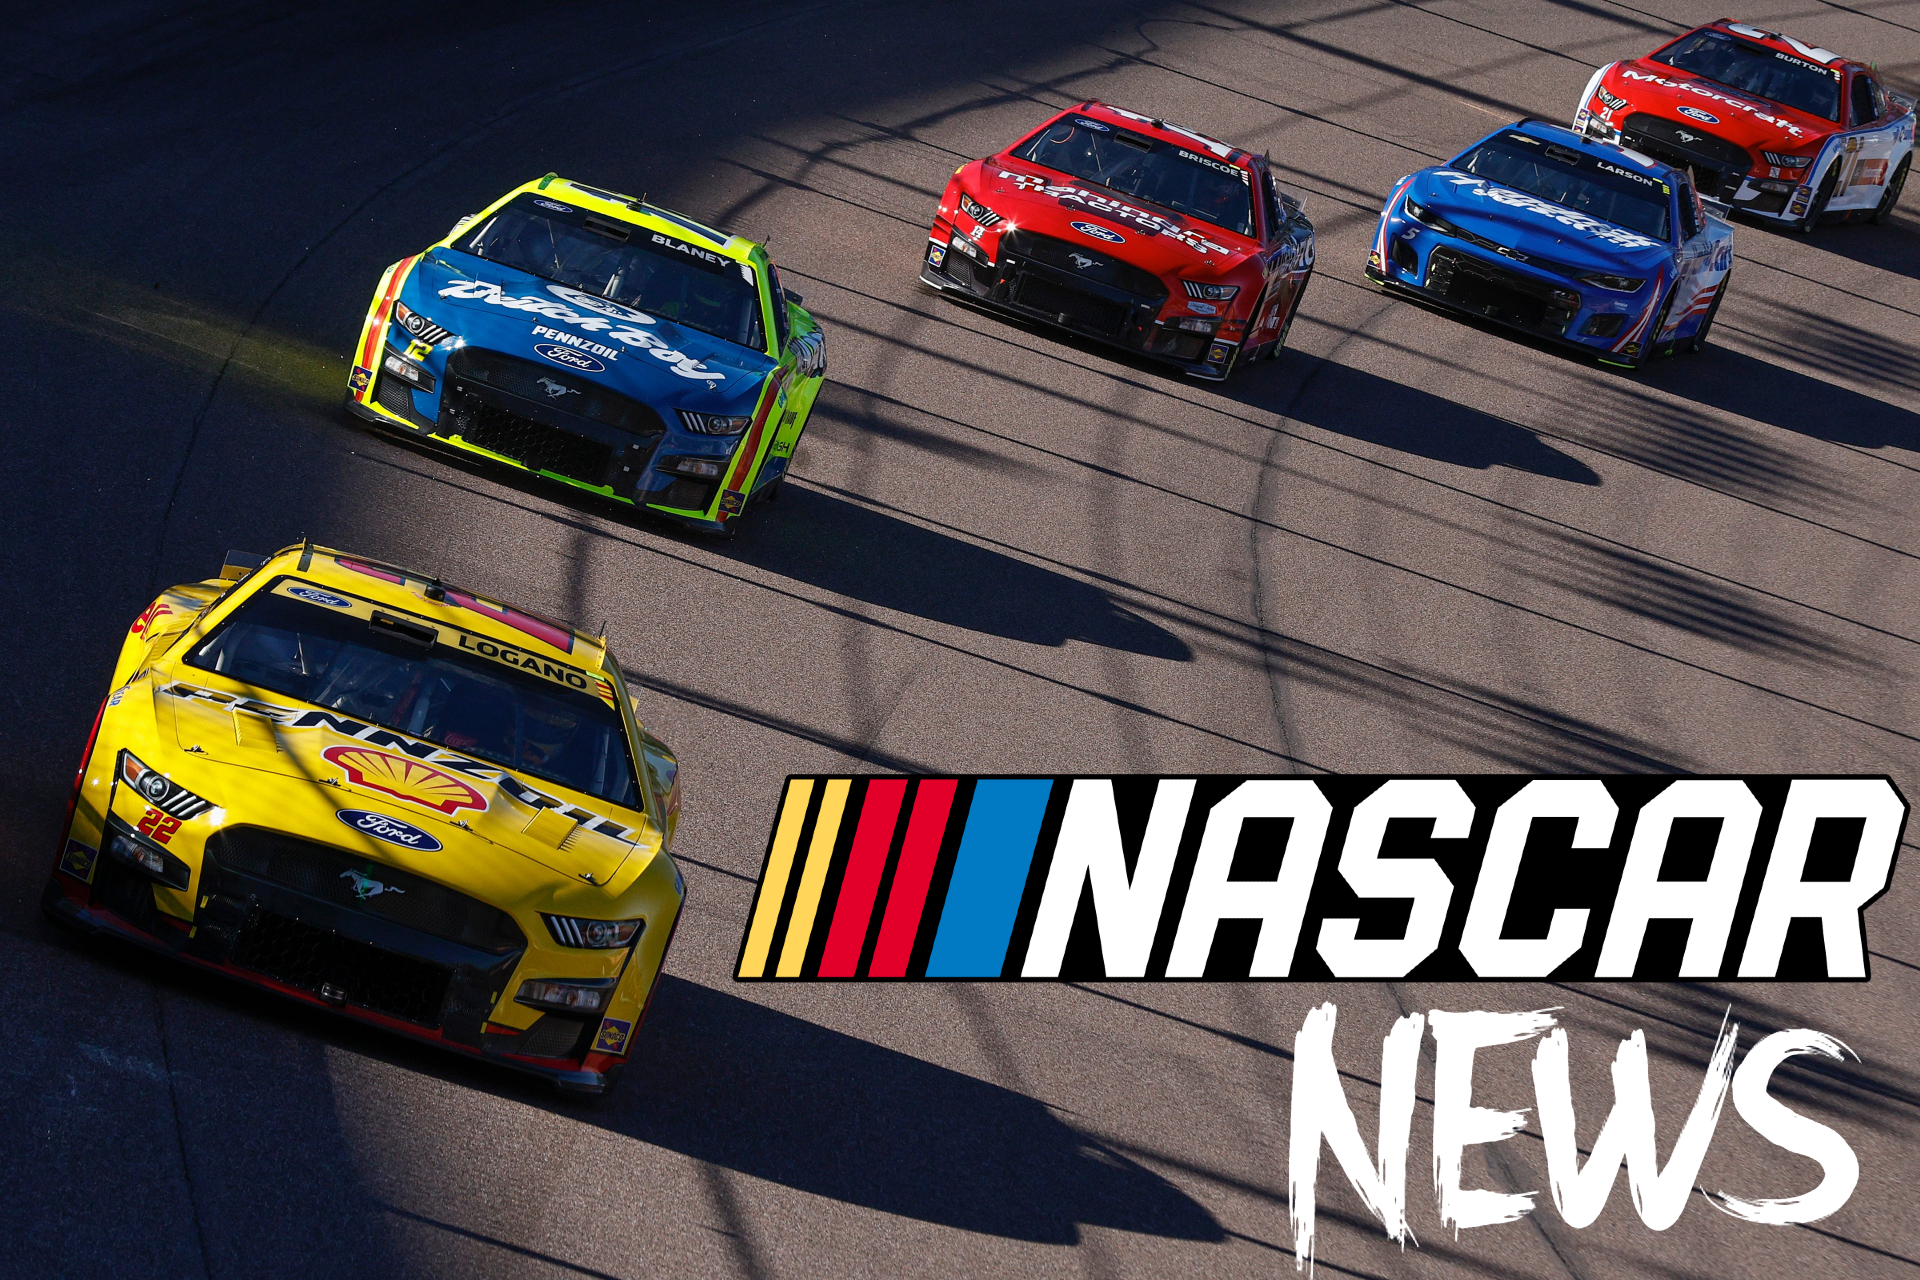 NASCAR NEWS